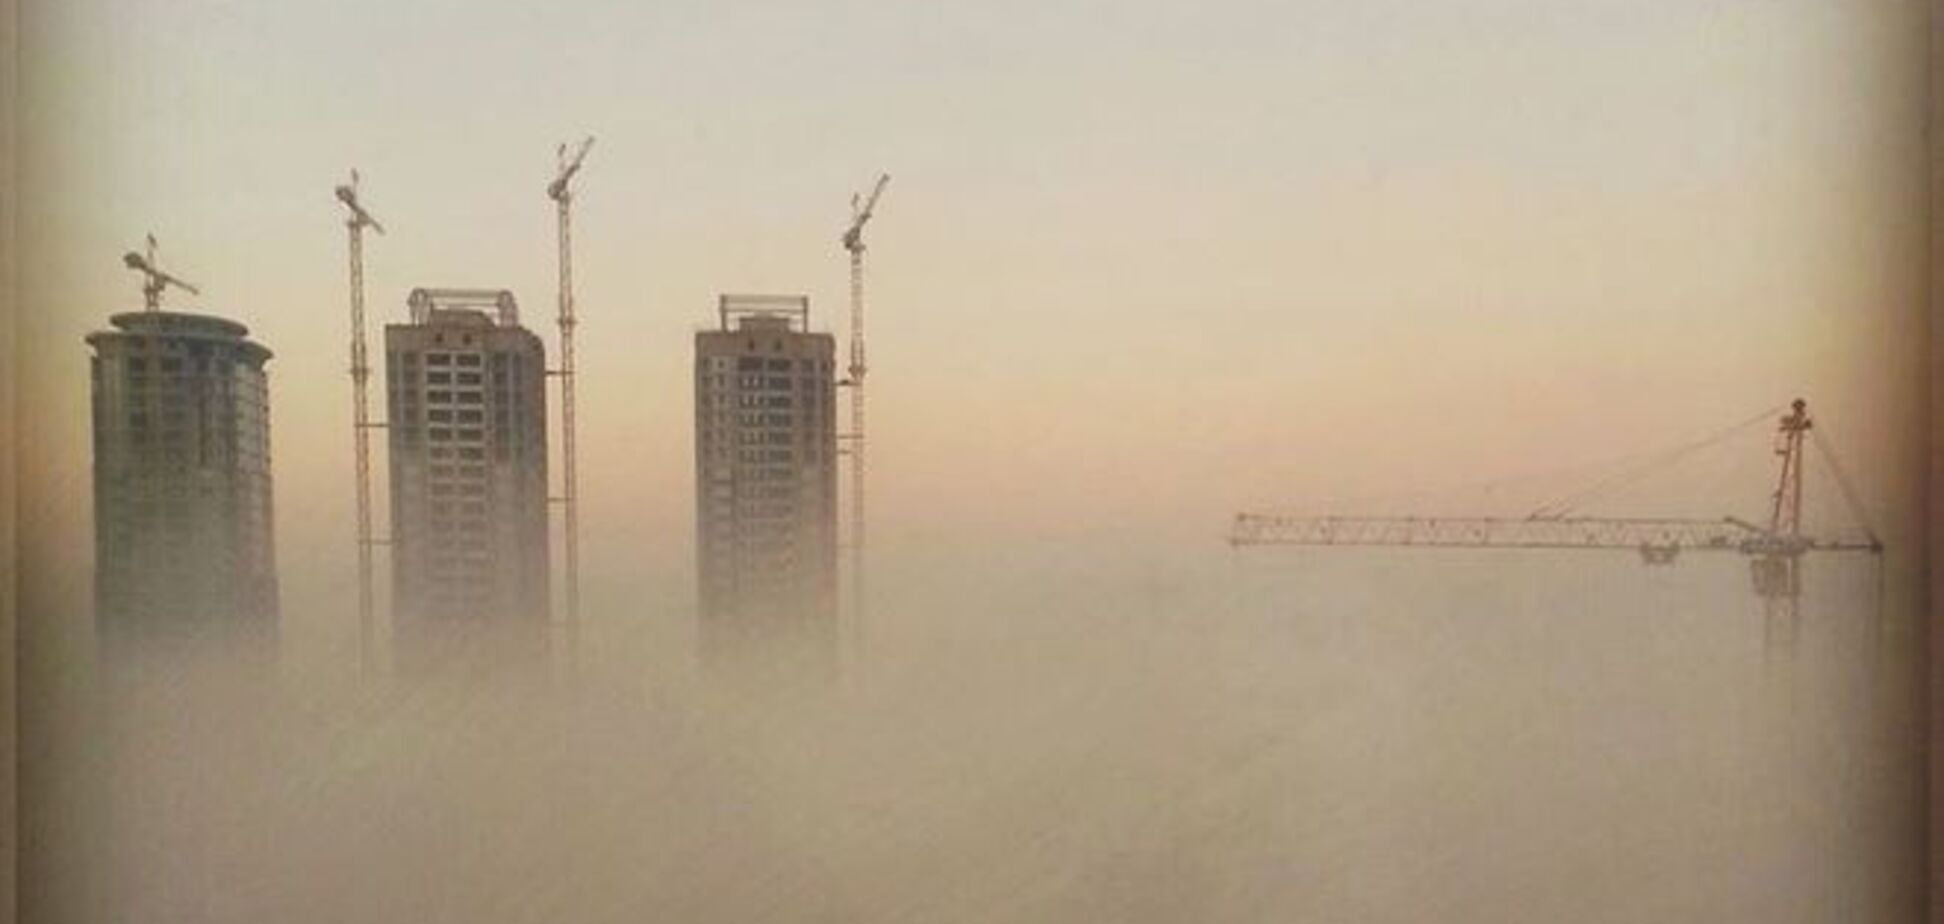 В соцсетях появились свежие фото Киева в тумане